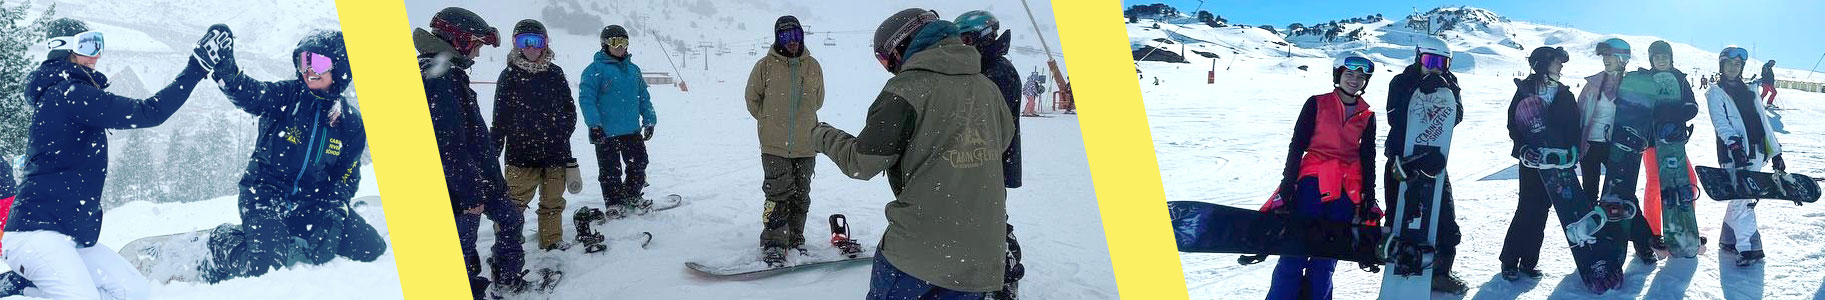 Cabin Fever School, clases de snowboard para grupos y camps de snowboard en Baqueira Beret